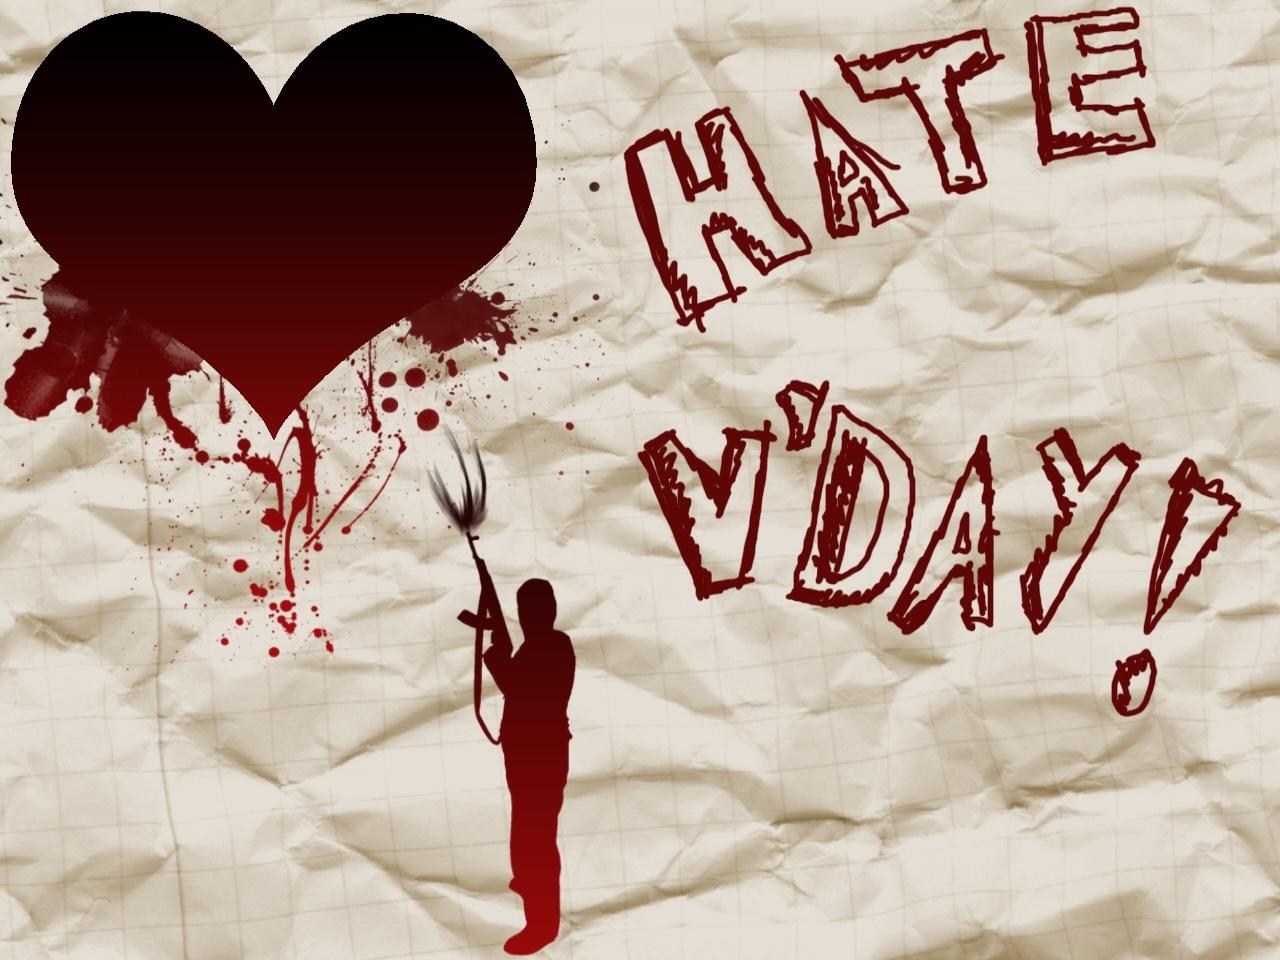 Hate V Day Wallpaper